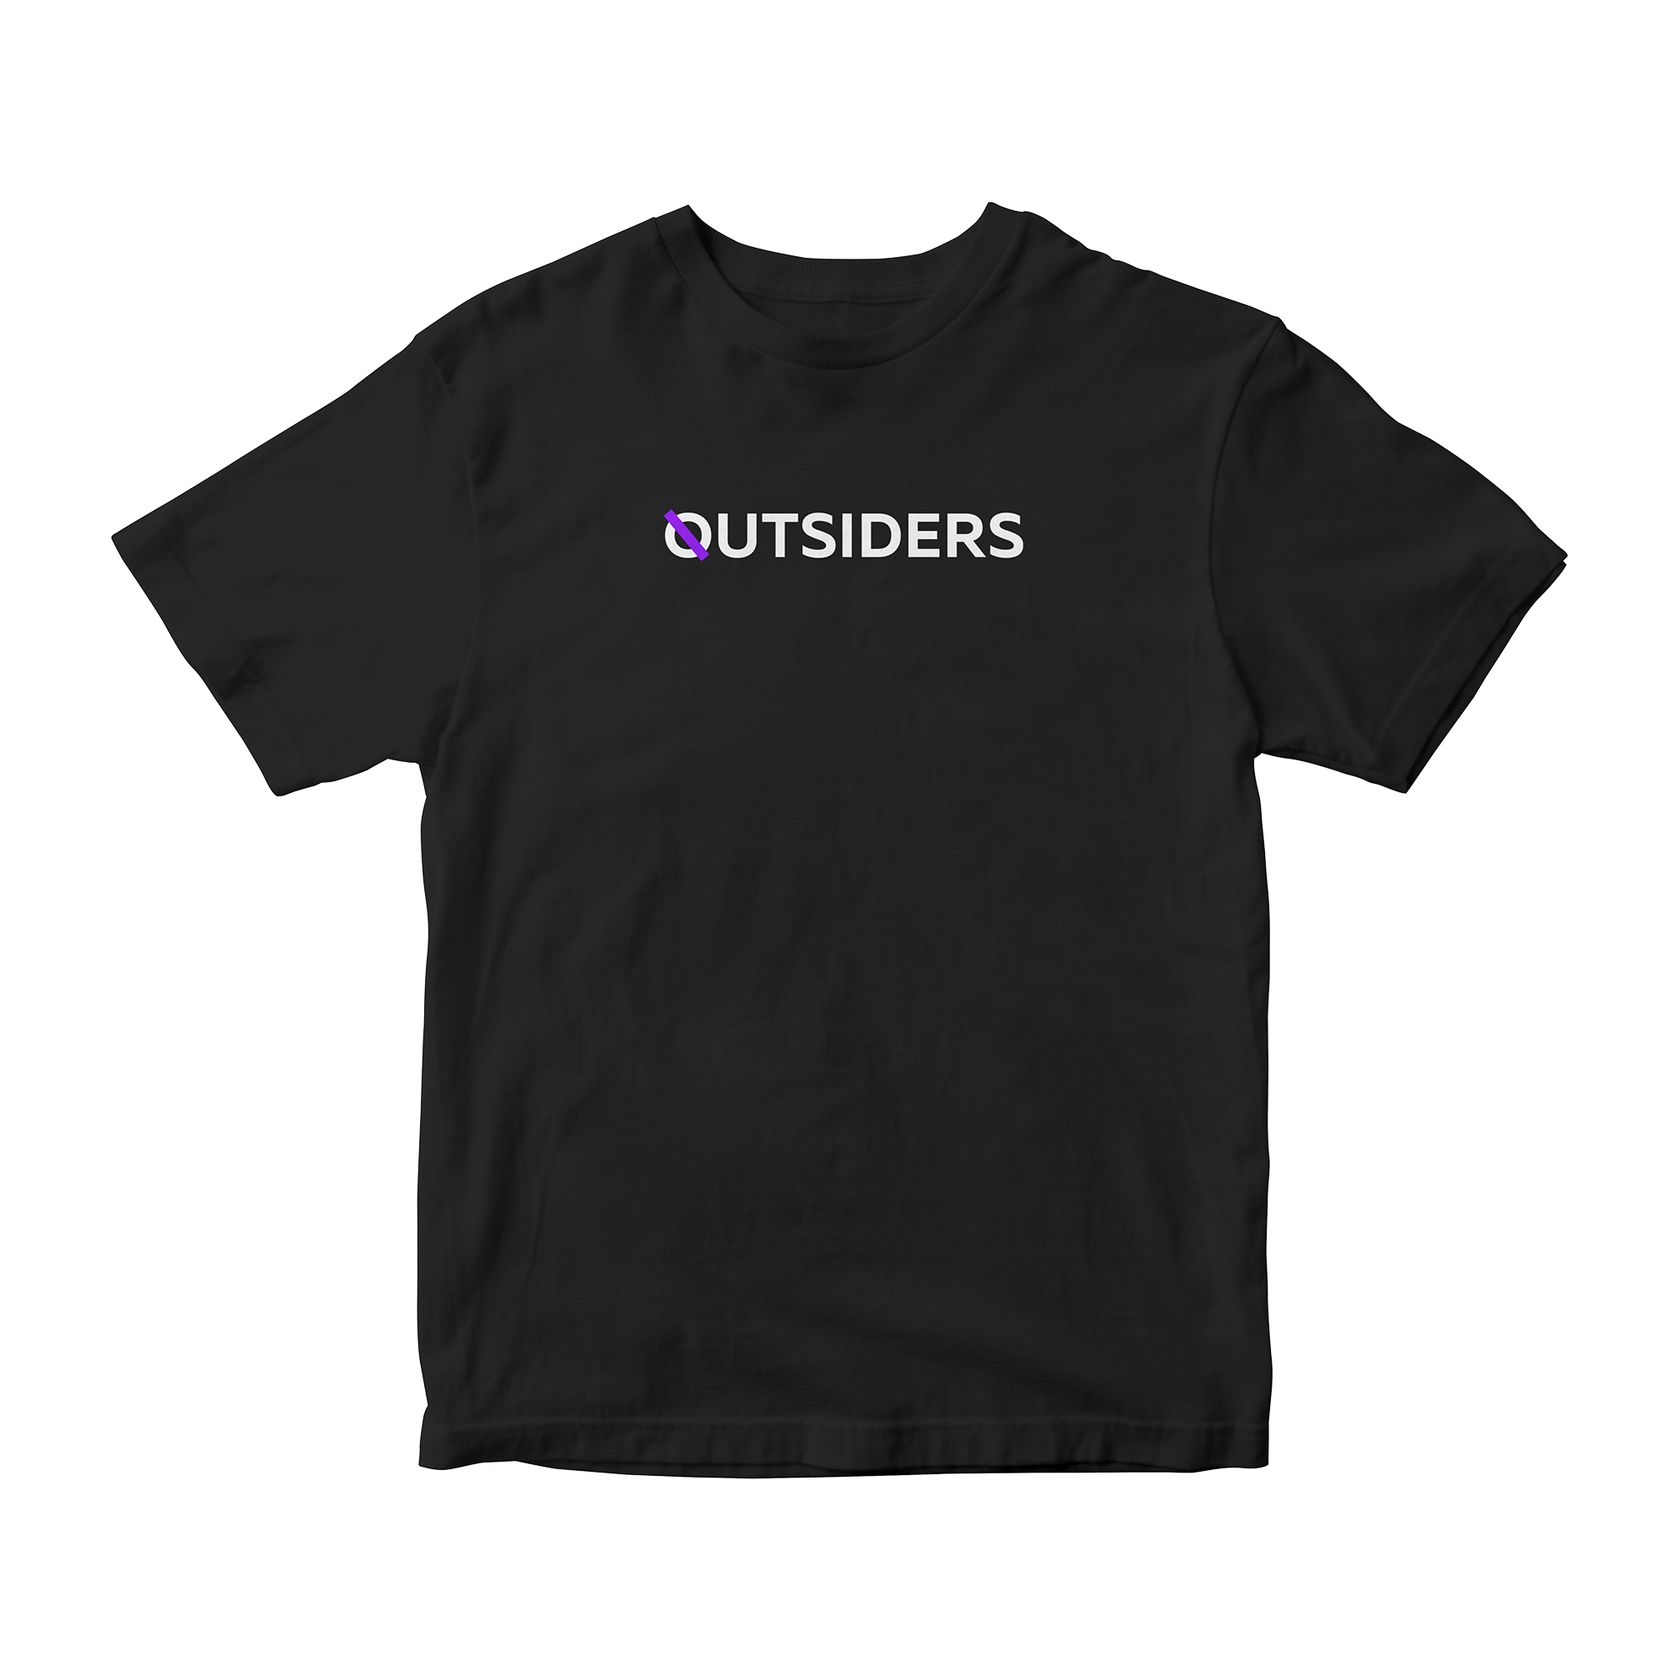 Товары в магазине официального мерча Outsiders